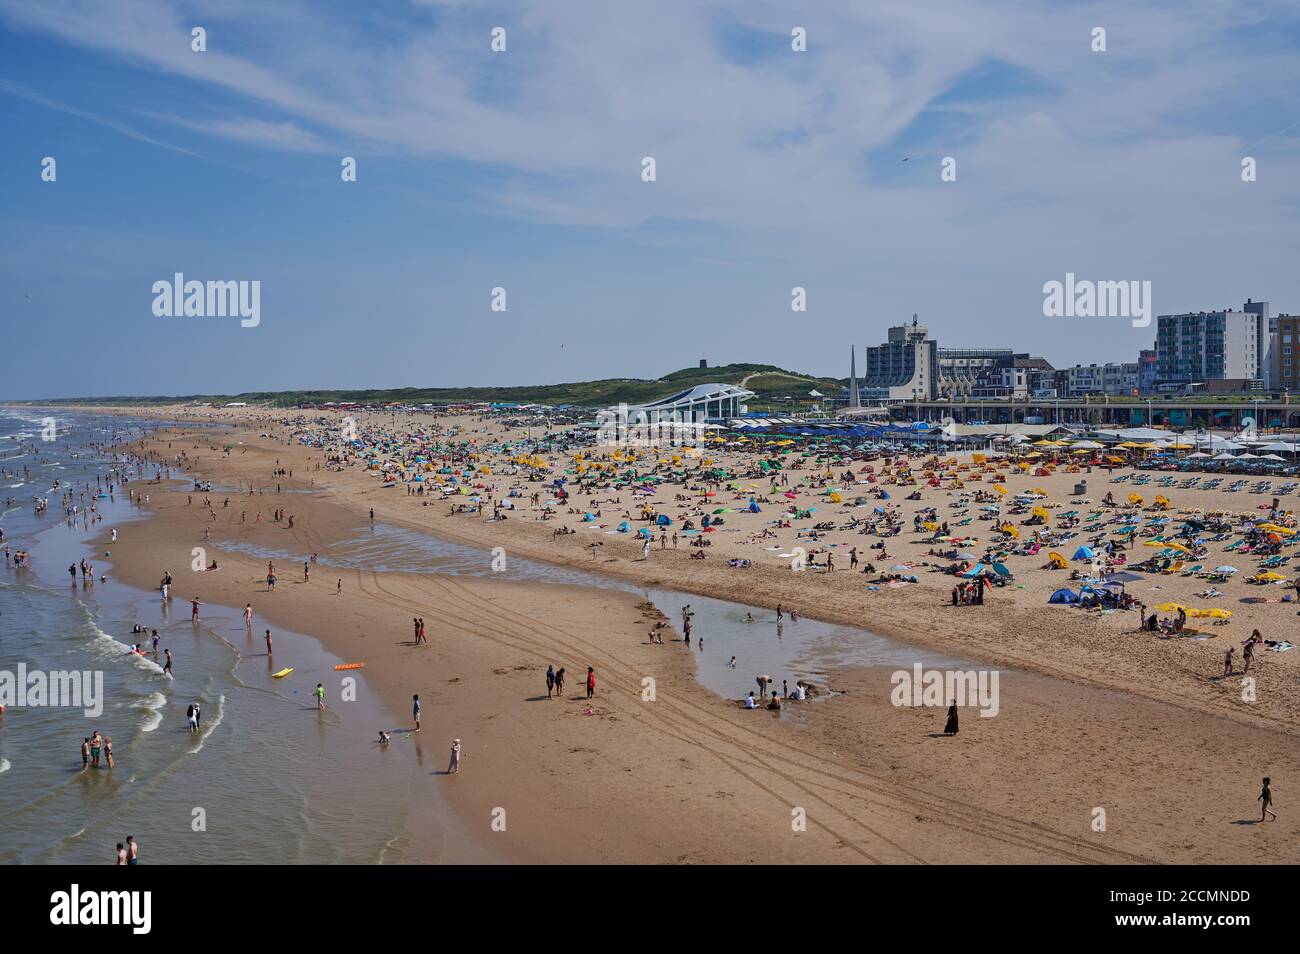 Scheveningen, Netherlands - August 10, 2020: people at the famous beach in Scheveningen, Netherlands. Stock Photo